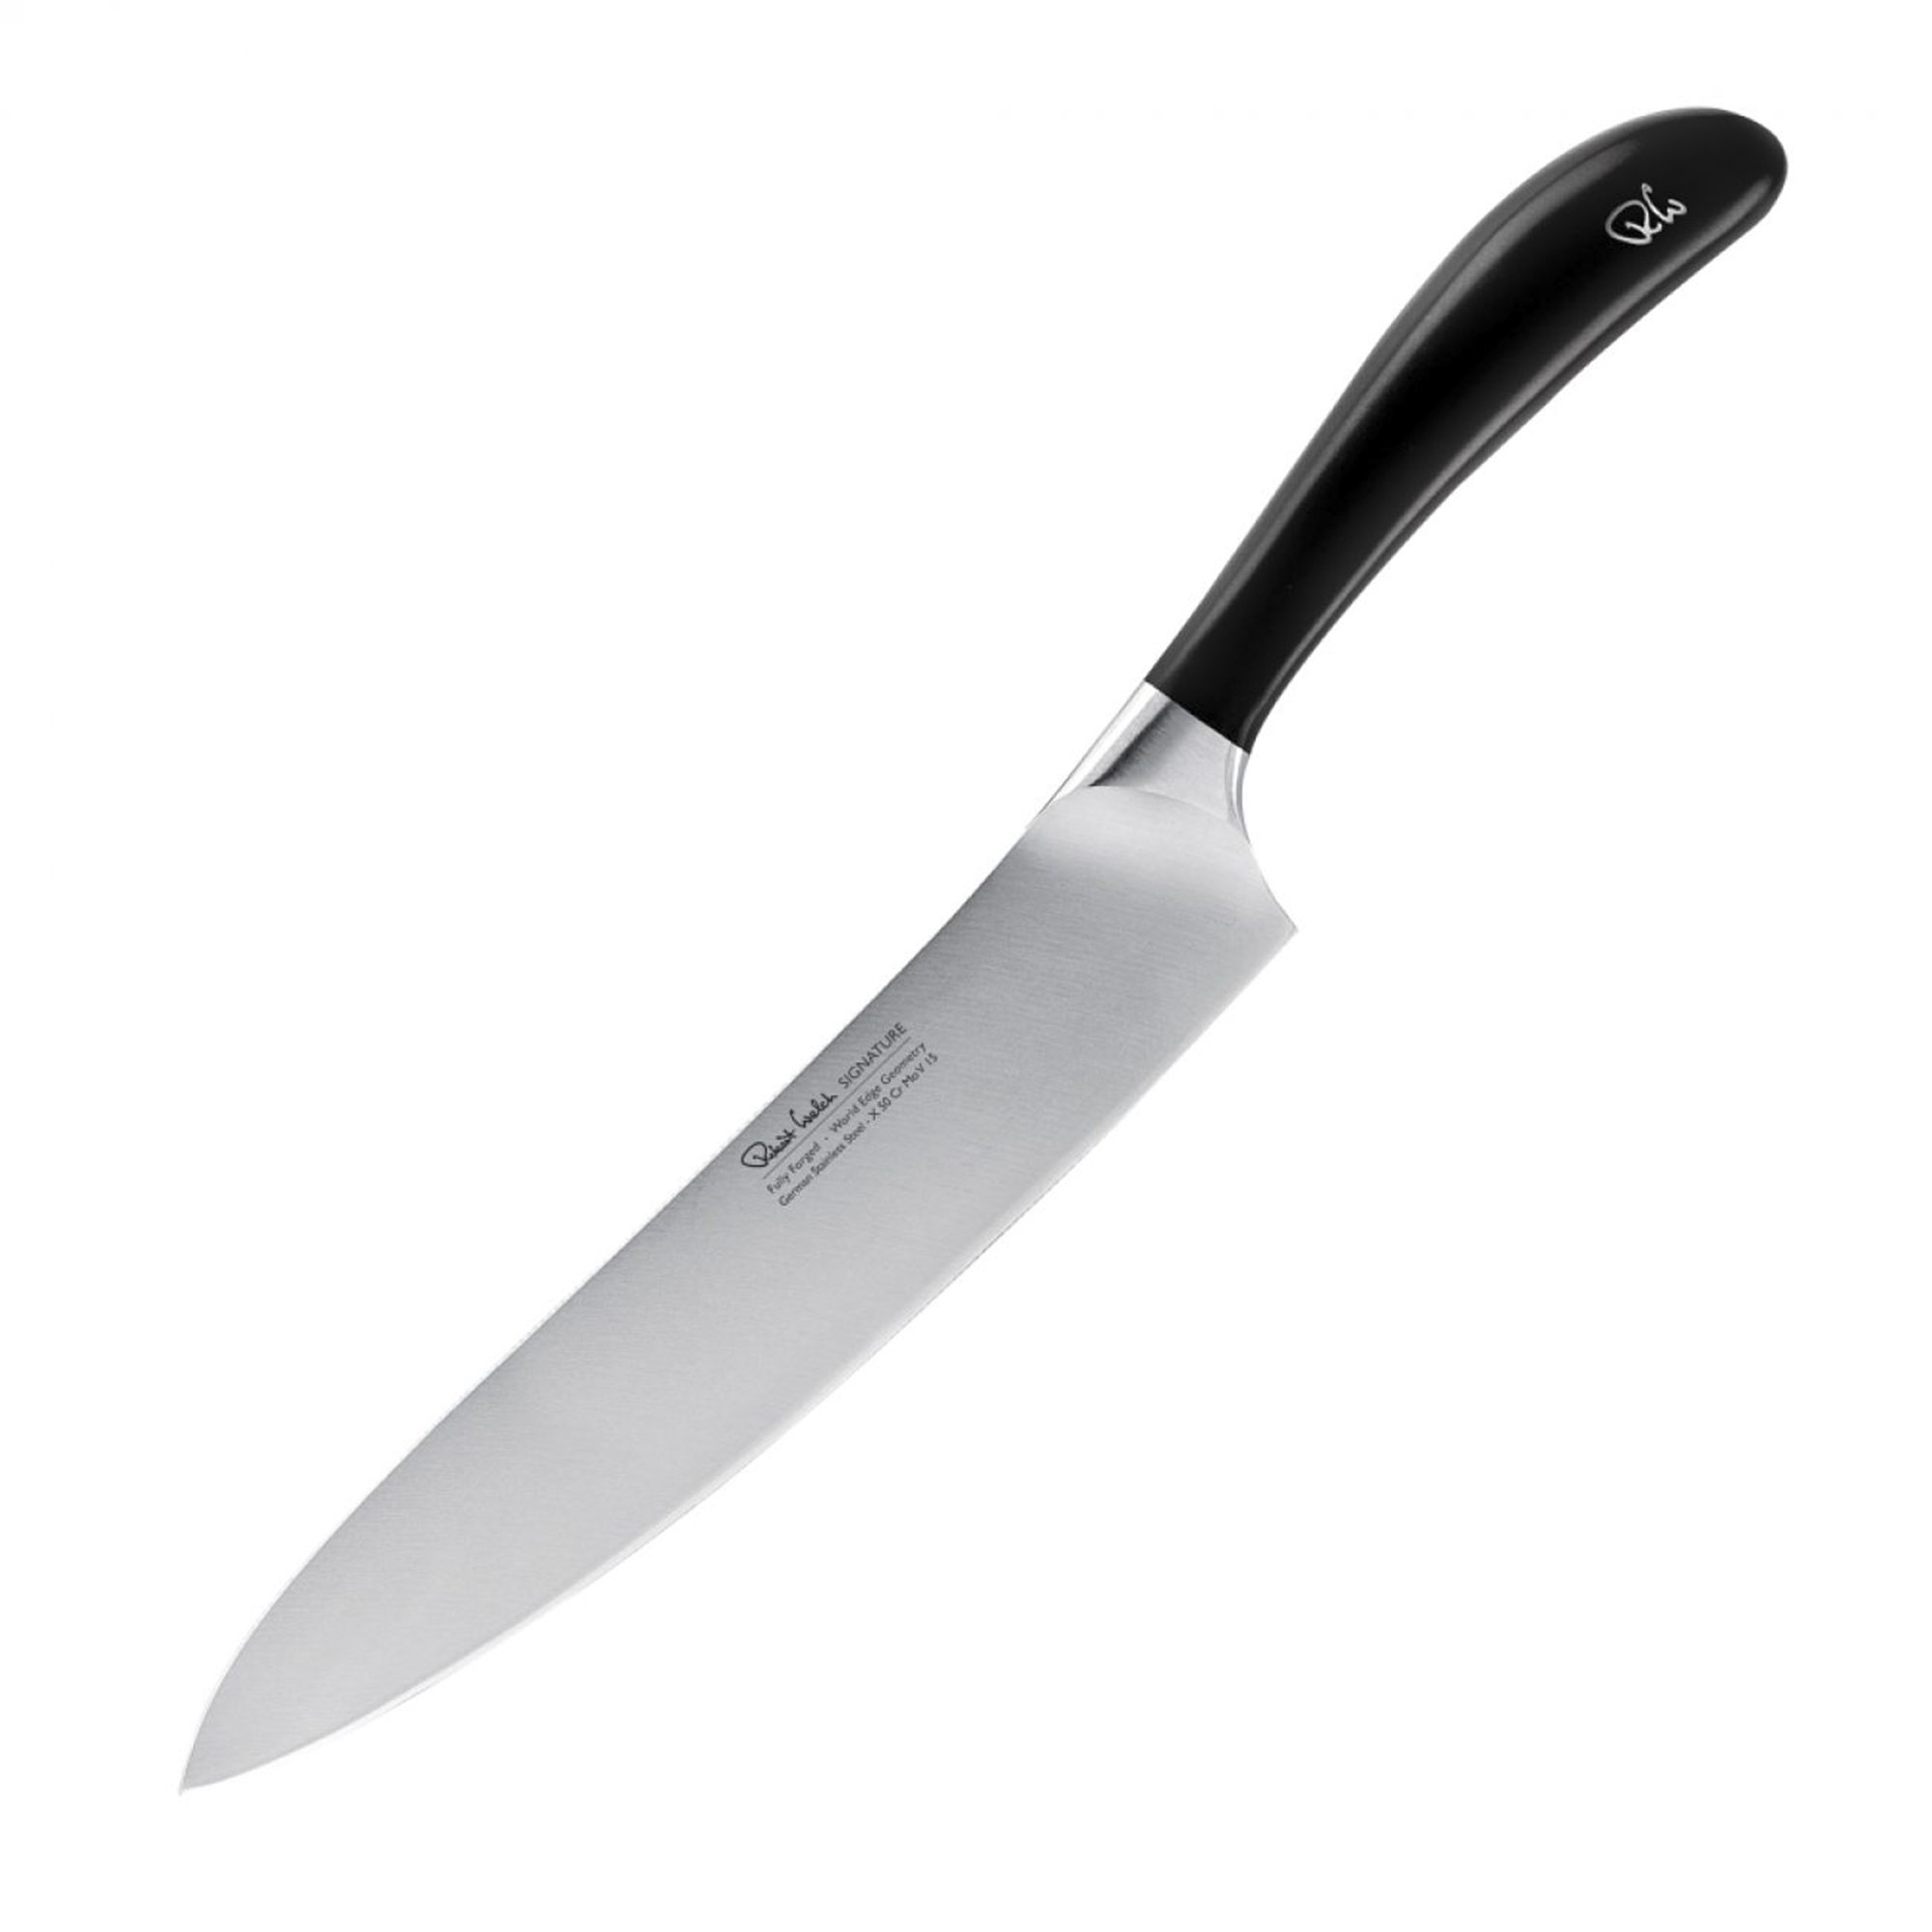 Поварской кухонный шеф-нож Robert Welch Signature 20 см